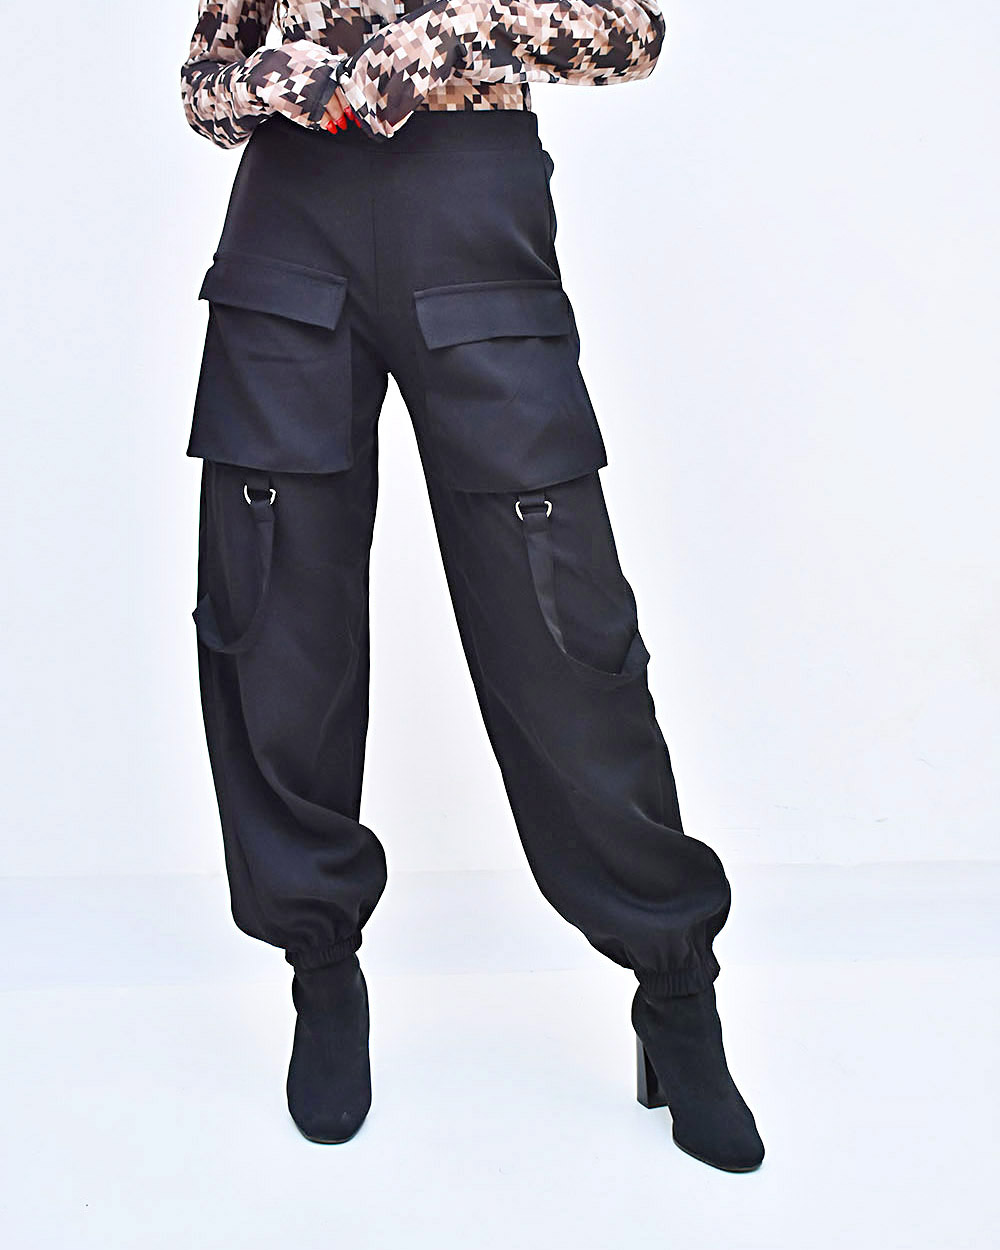 Γυναικείο Παντελόνι μαύρο τύπου cargo με λάστιχο στη μέση και κάτω